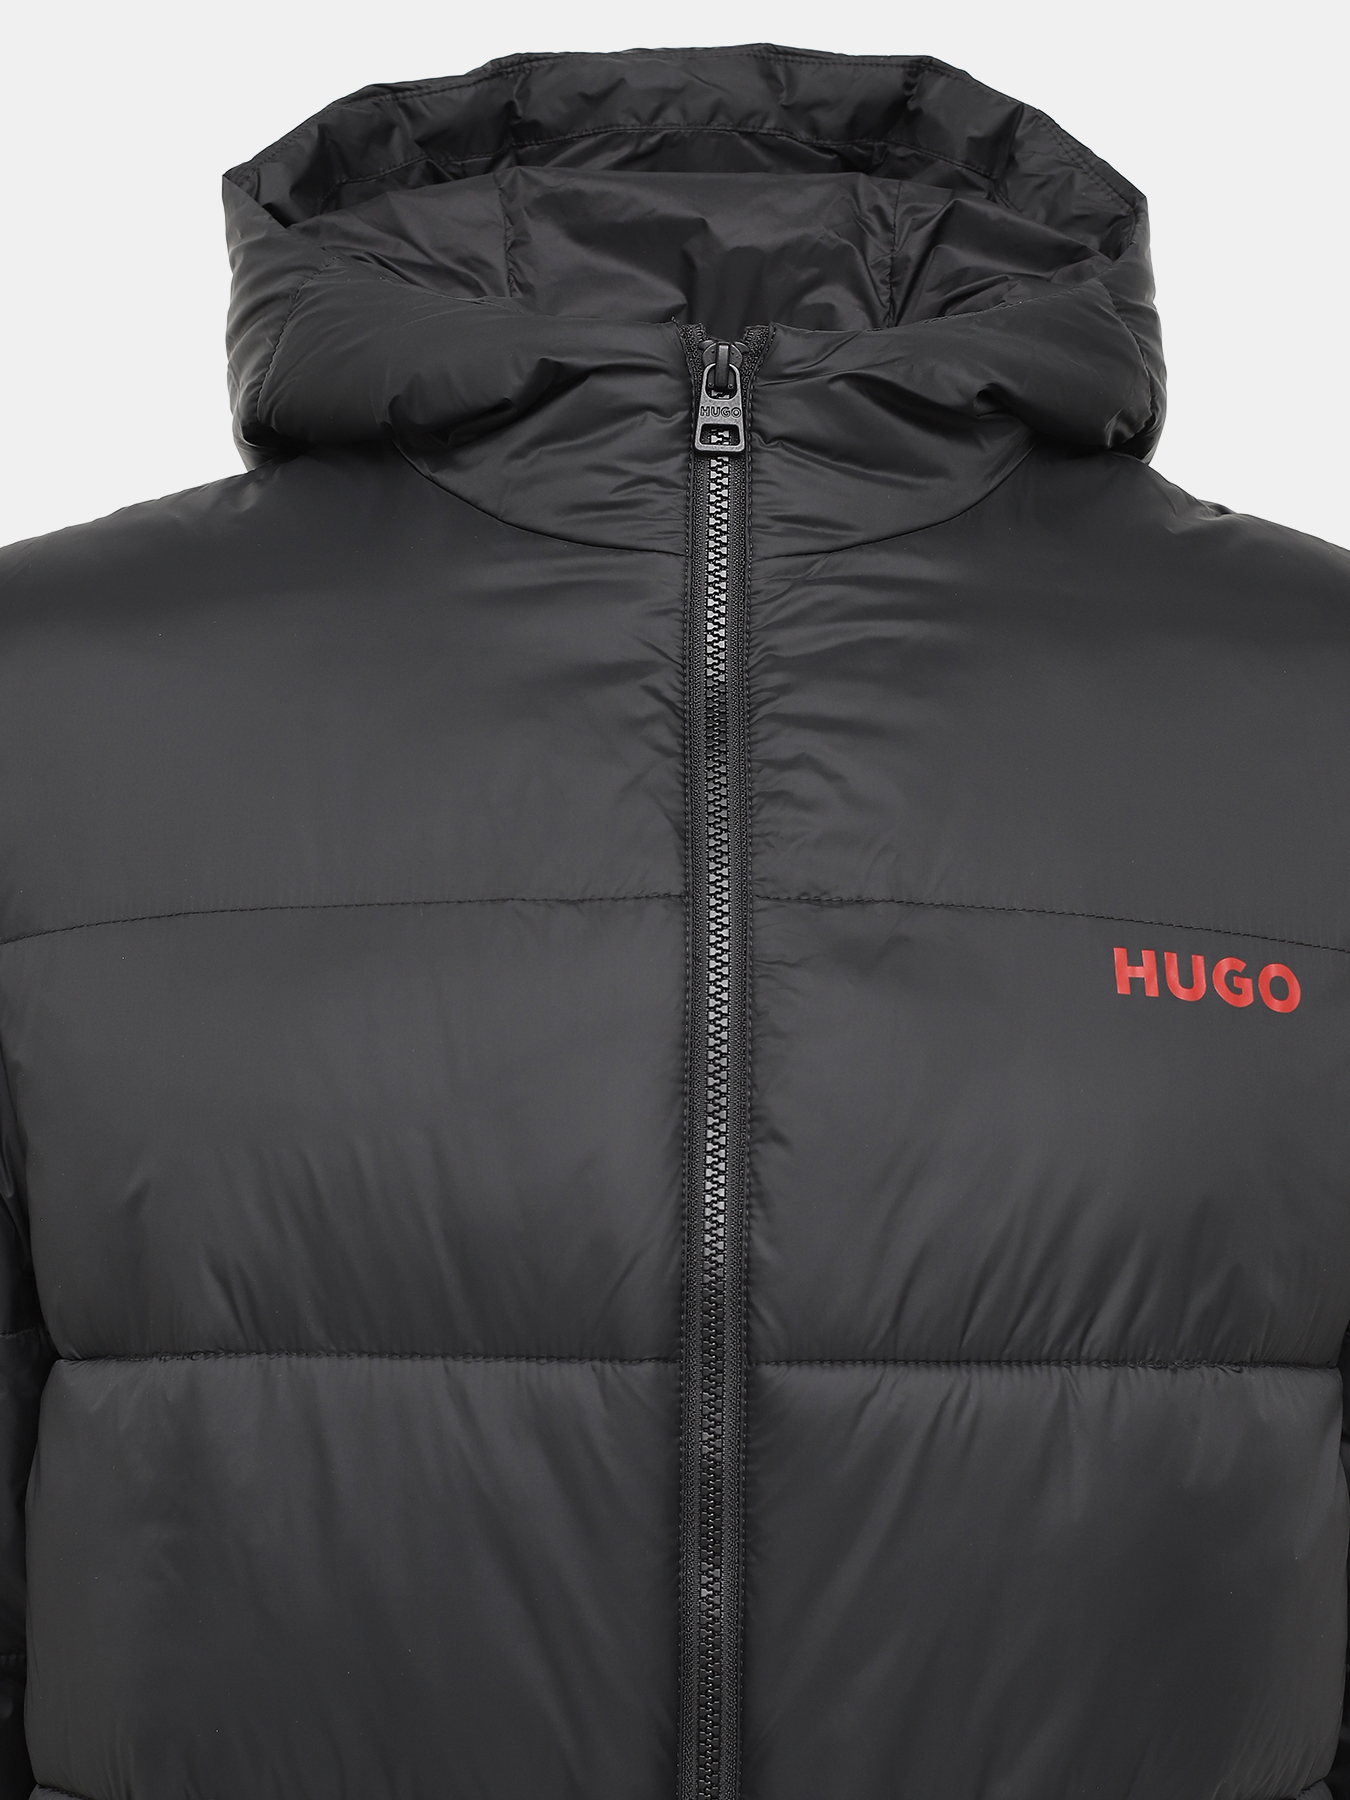 Удлиненная куртка Mati HUGO 426043-045, цвет черный, размер 52-54 - фото 5